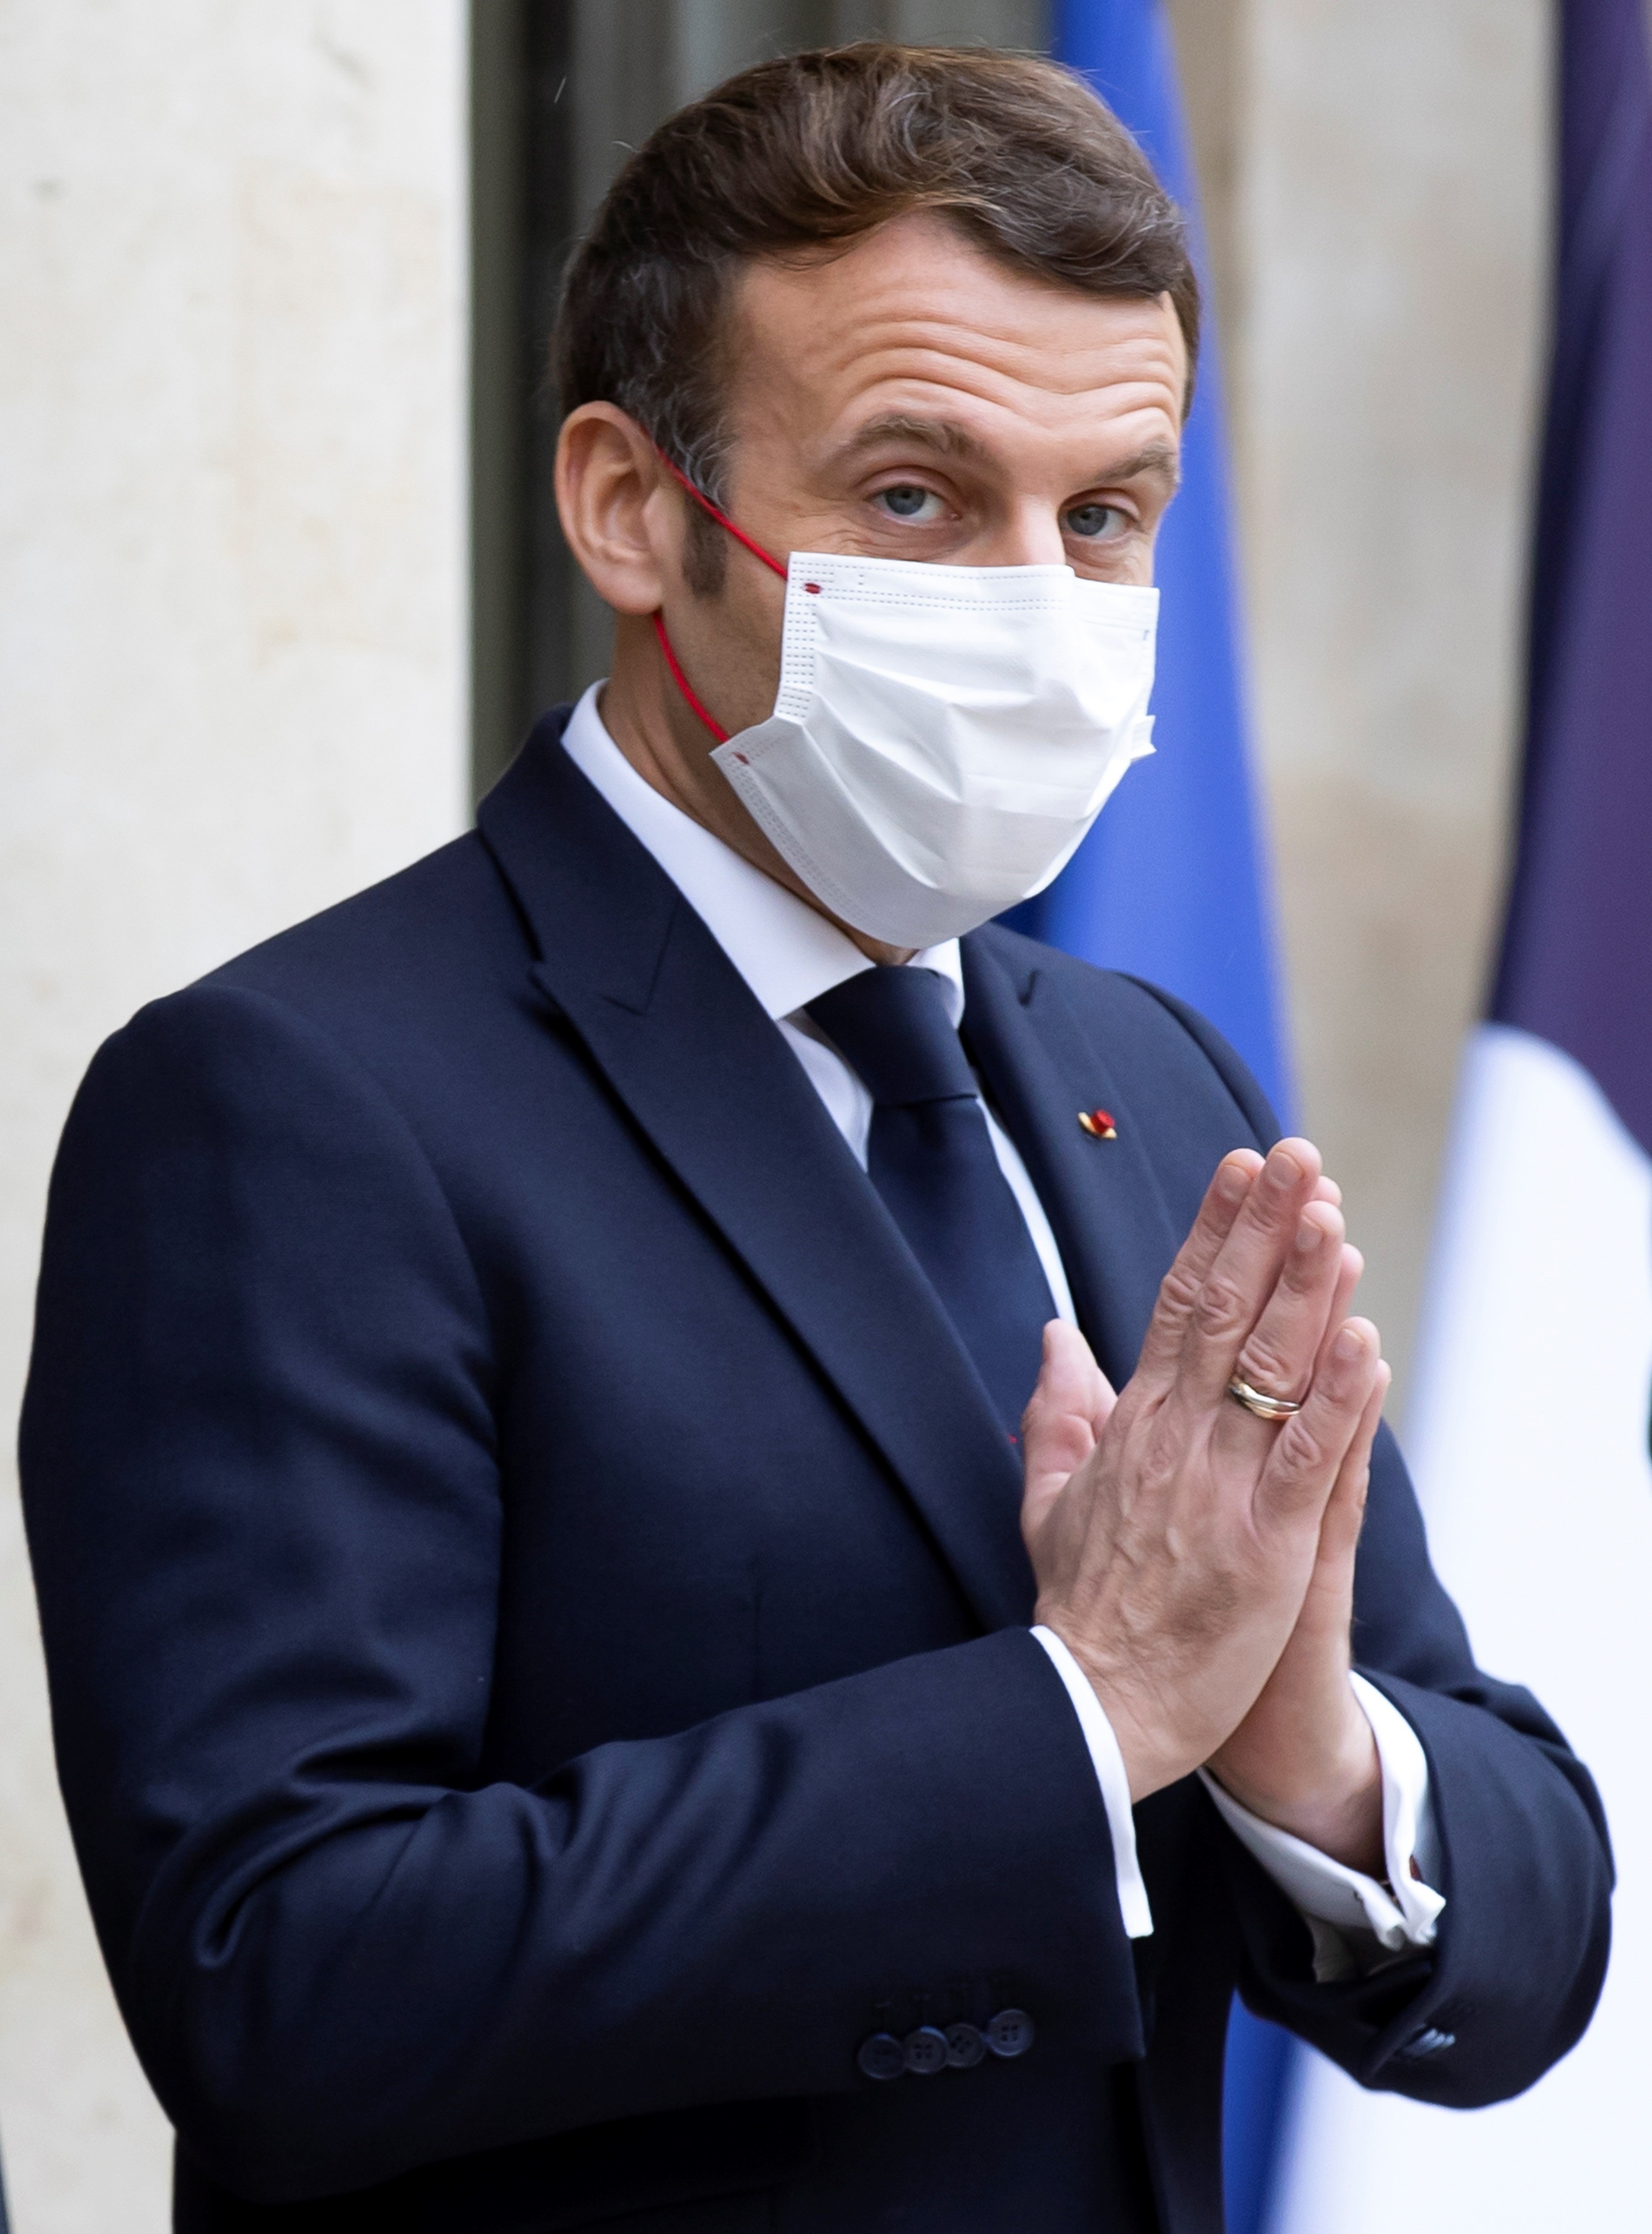 Macron, positiu per coronavirus